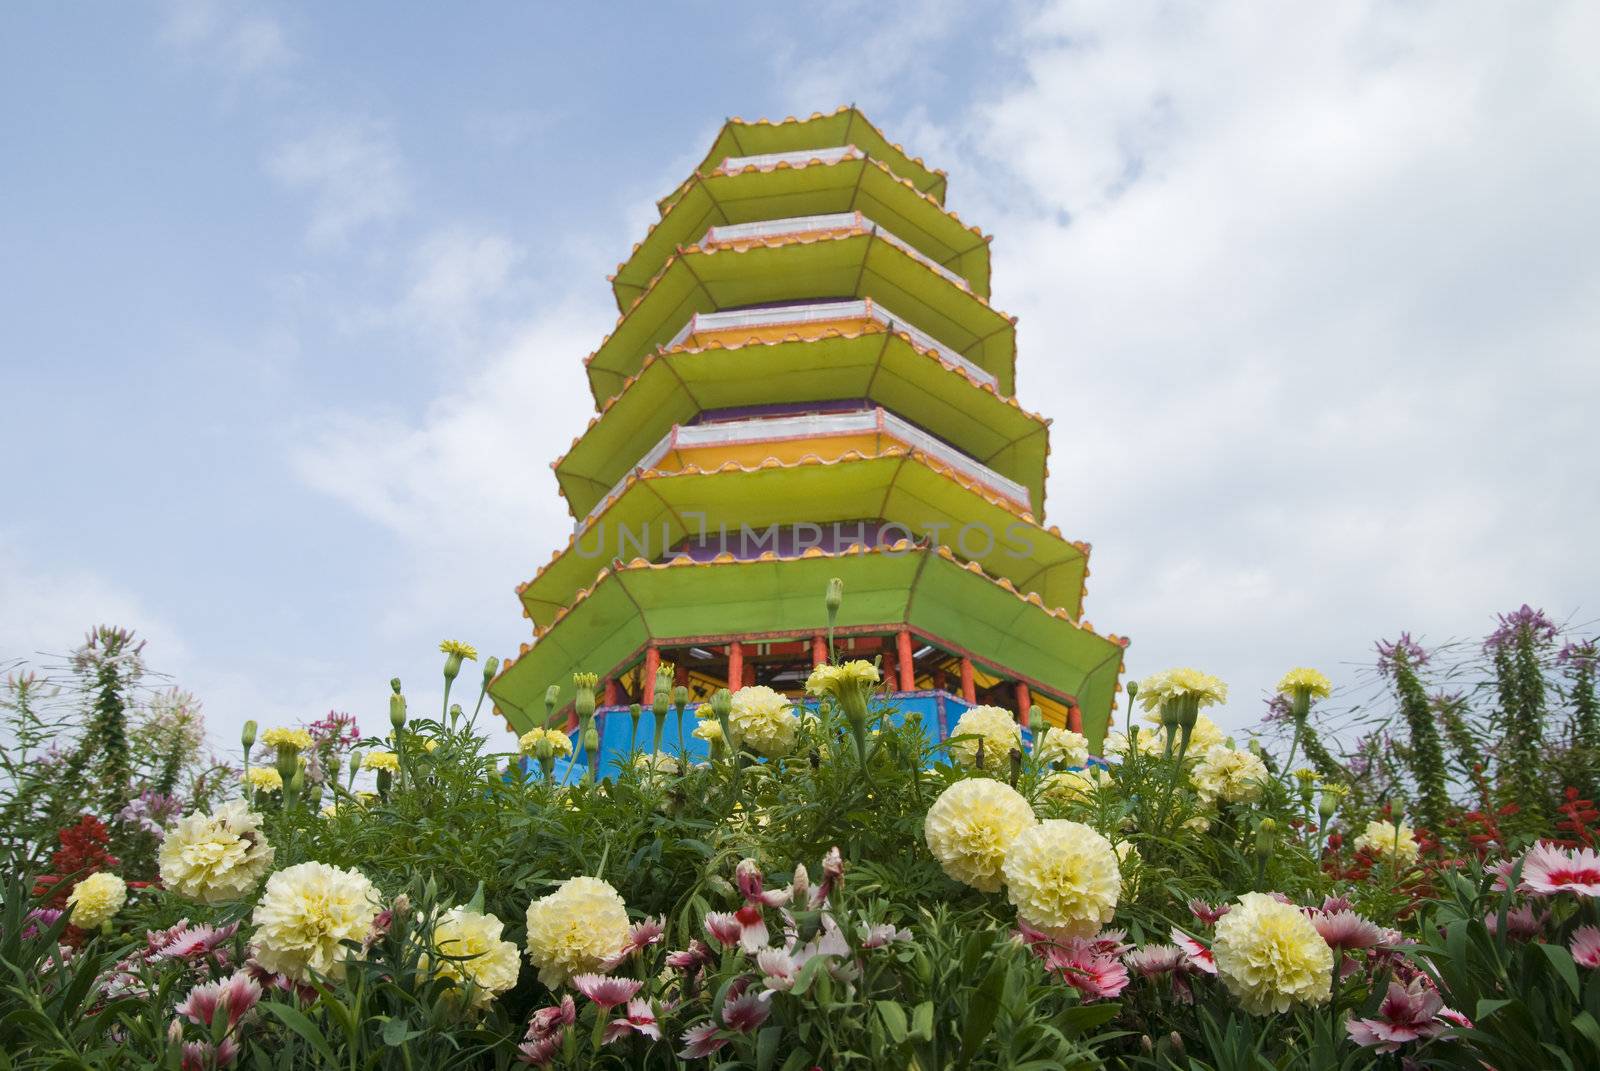 pagoda by yuliang11